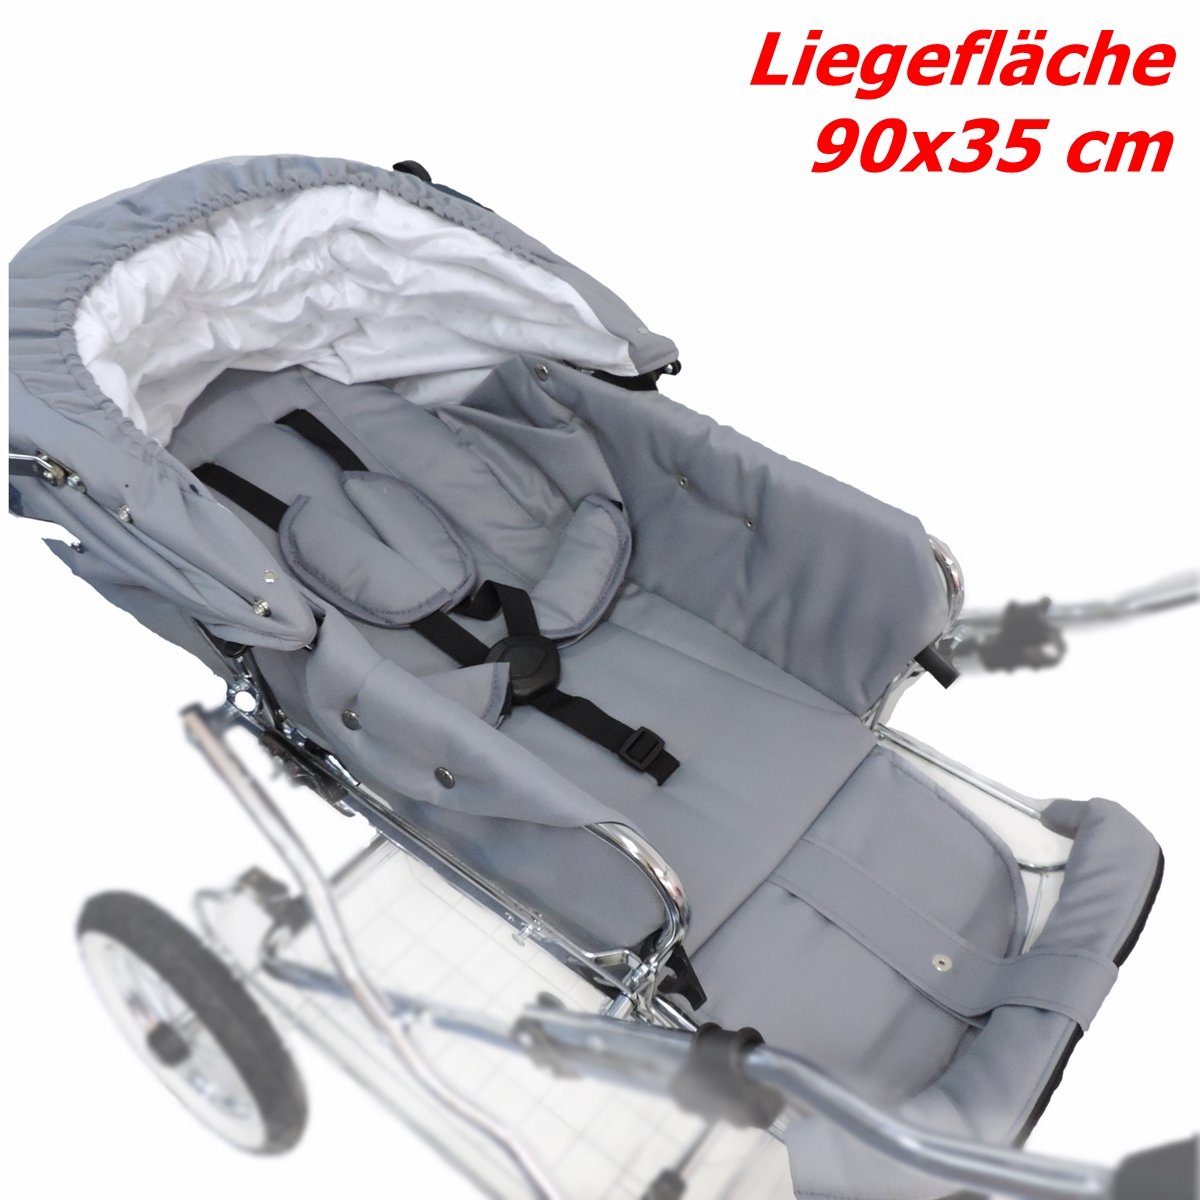 silbergrau - alle in Eichhorn made Kinderwagen Komponenten Retro-Look Designer, Sport-Kinderwagen EU